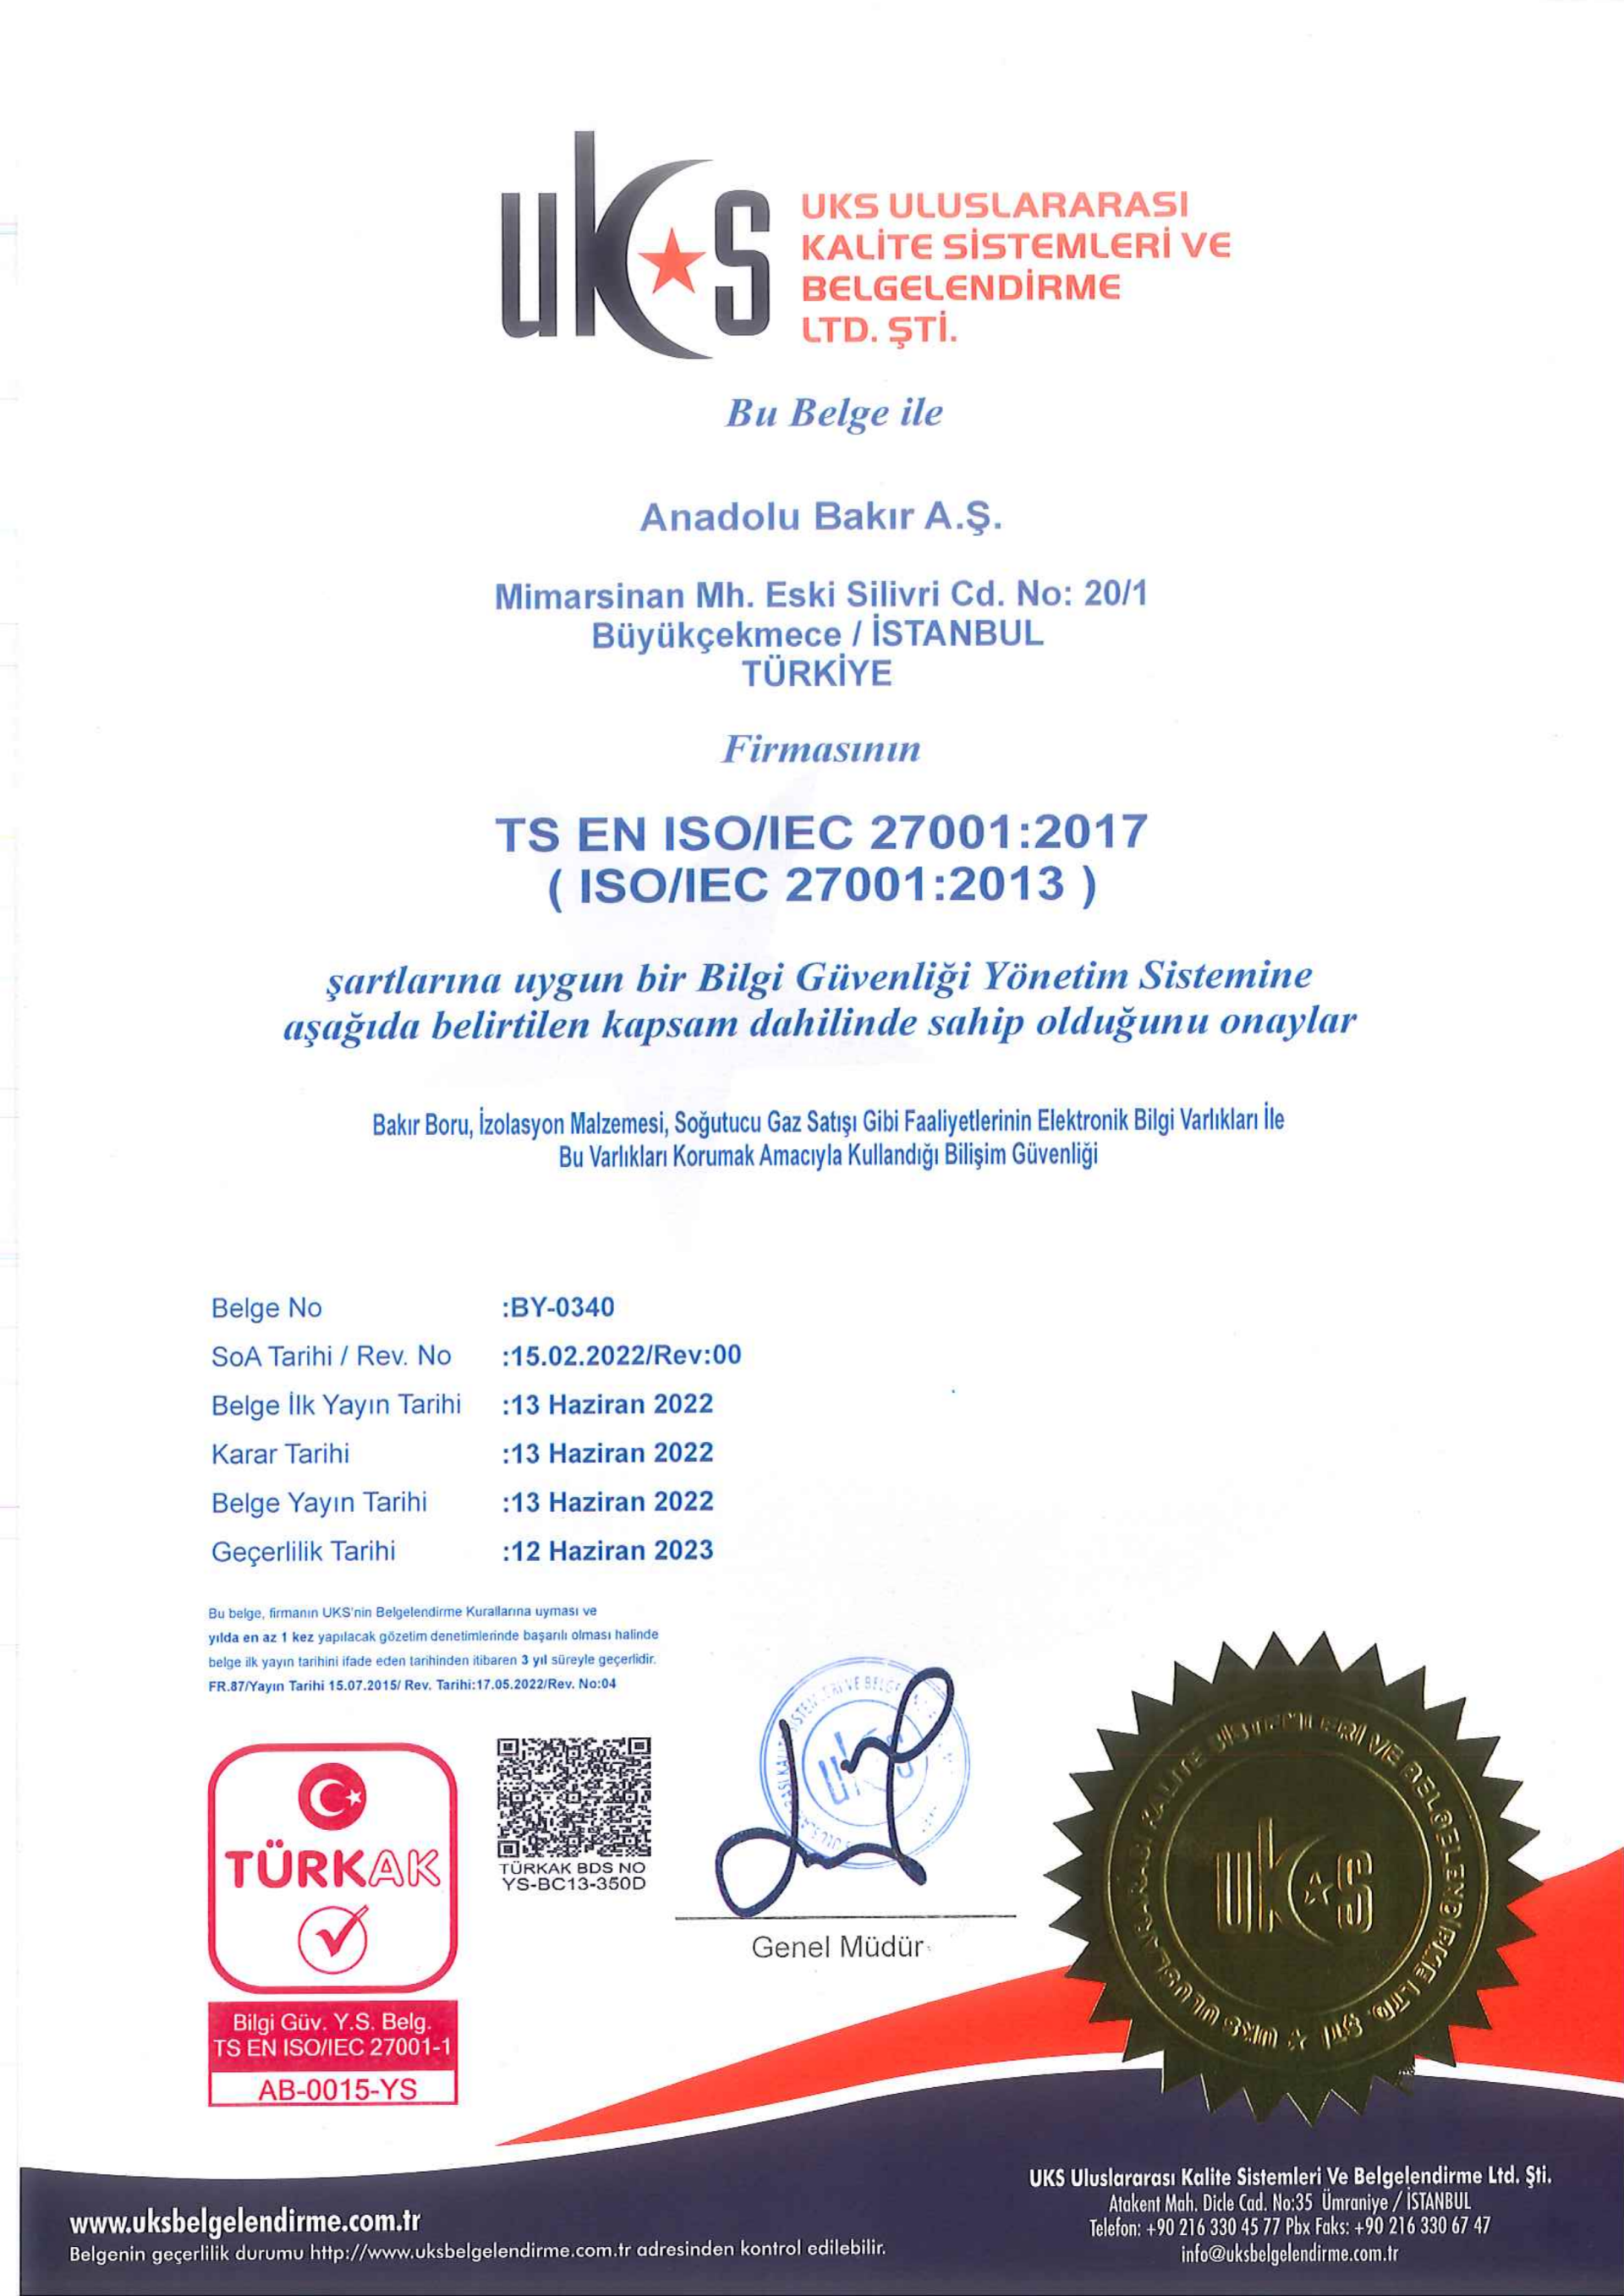 ISO 27001 Sertifikası